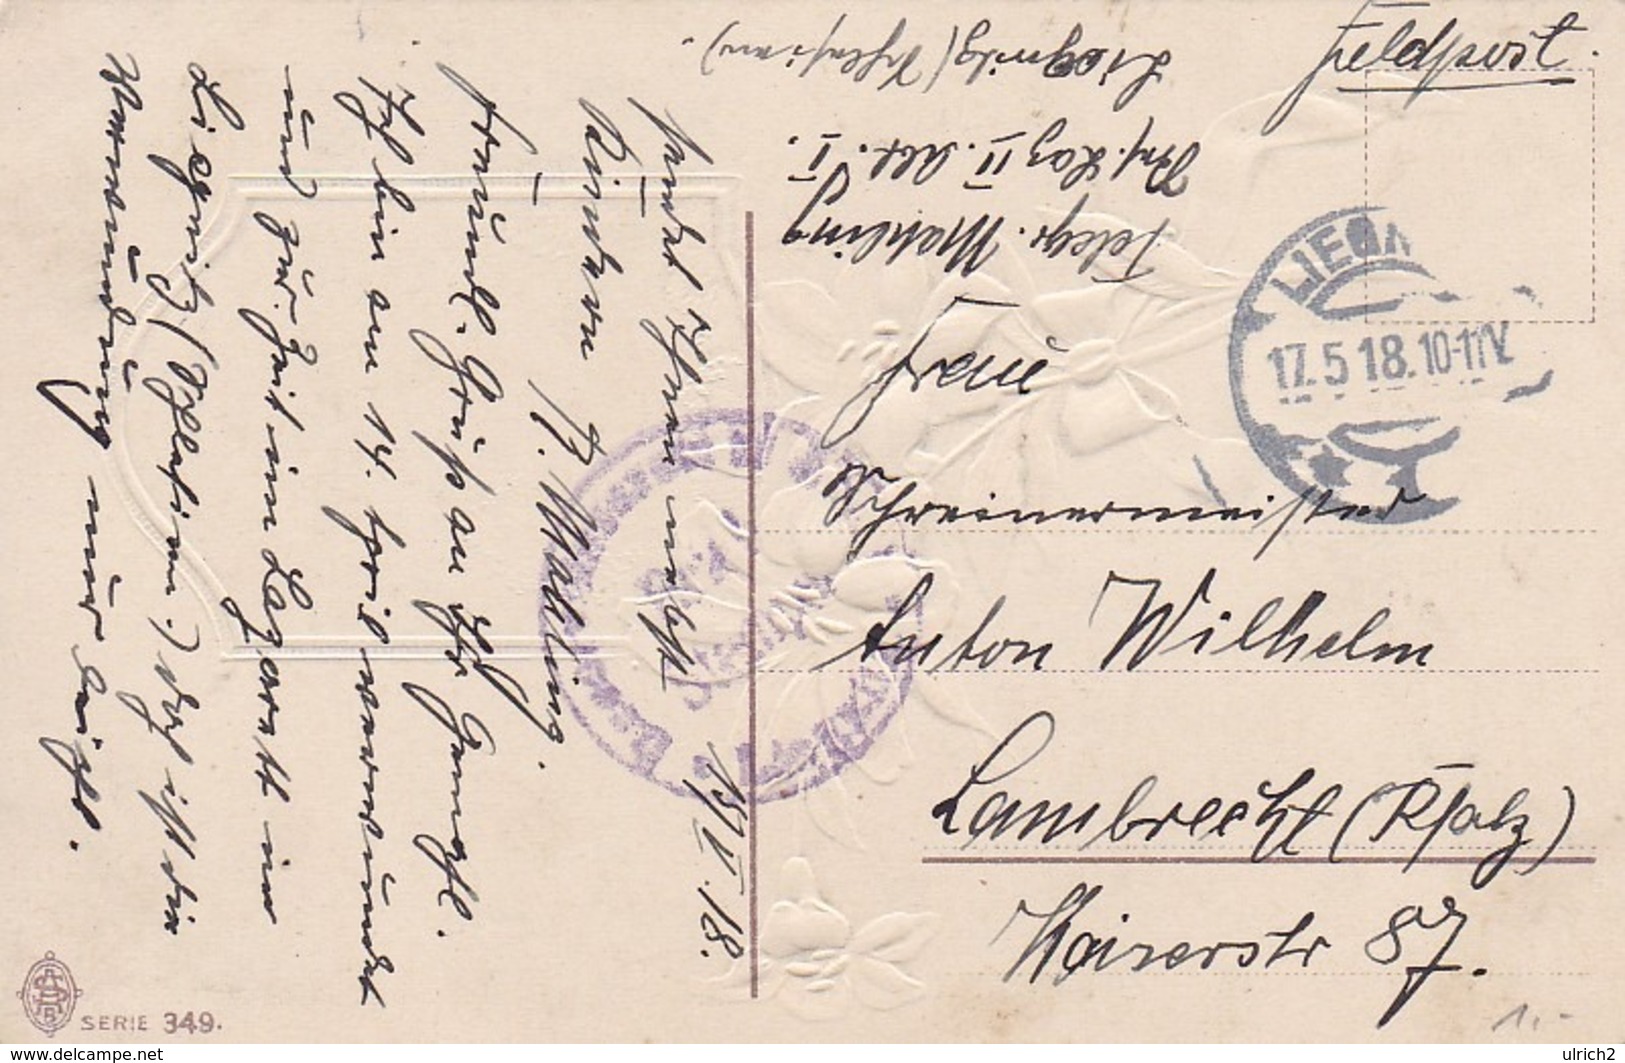 AK Herzlichen Pfingstgruss - Kirche Blumen - Reliefdruck - Feldpost Reserve Lazarett II Liegnitz - 1918 (45017) - Pentecoste